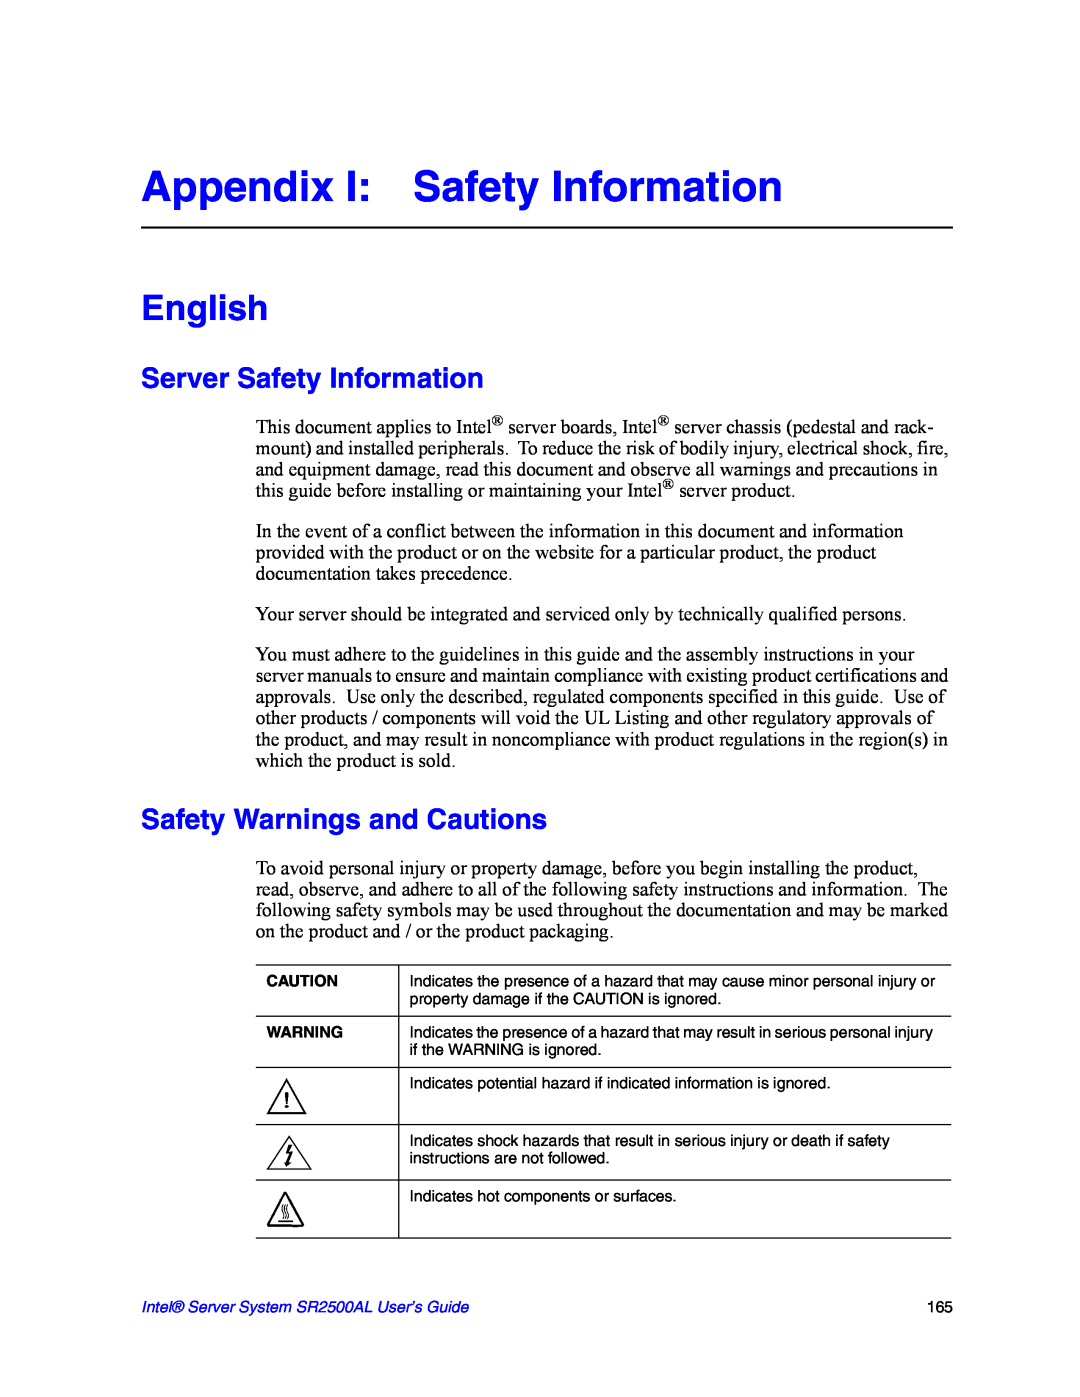 Intel SR2500AL manual Appendix I Safety Information, Server Safety Information, Safety Warnings and Cautions, English 